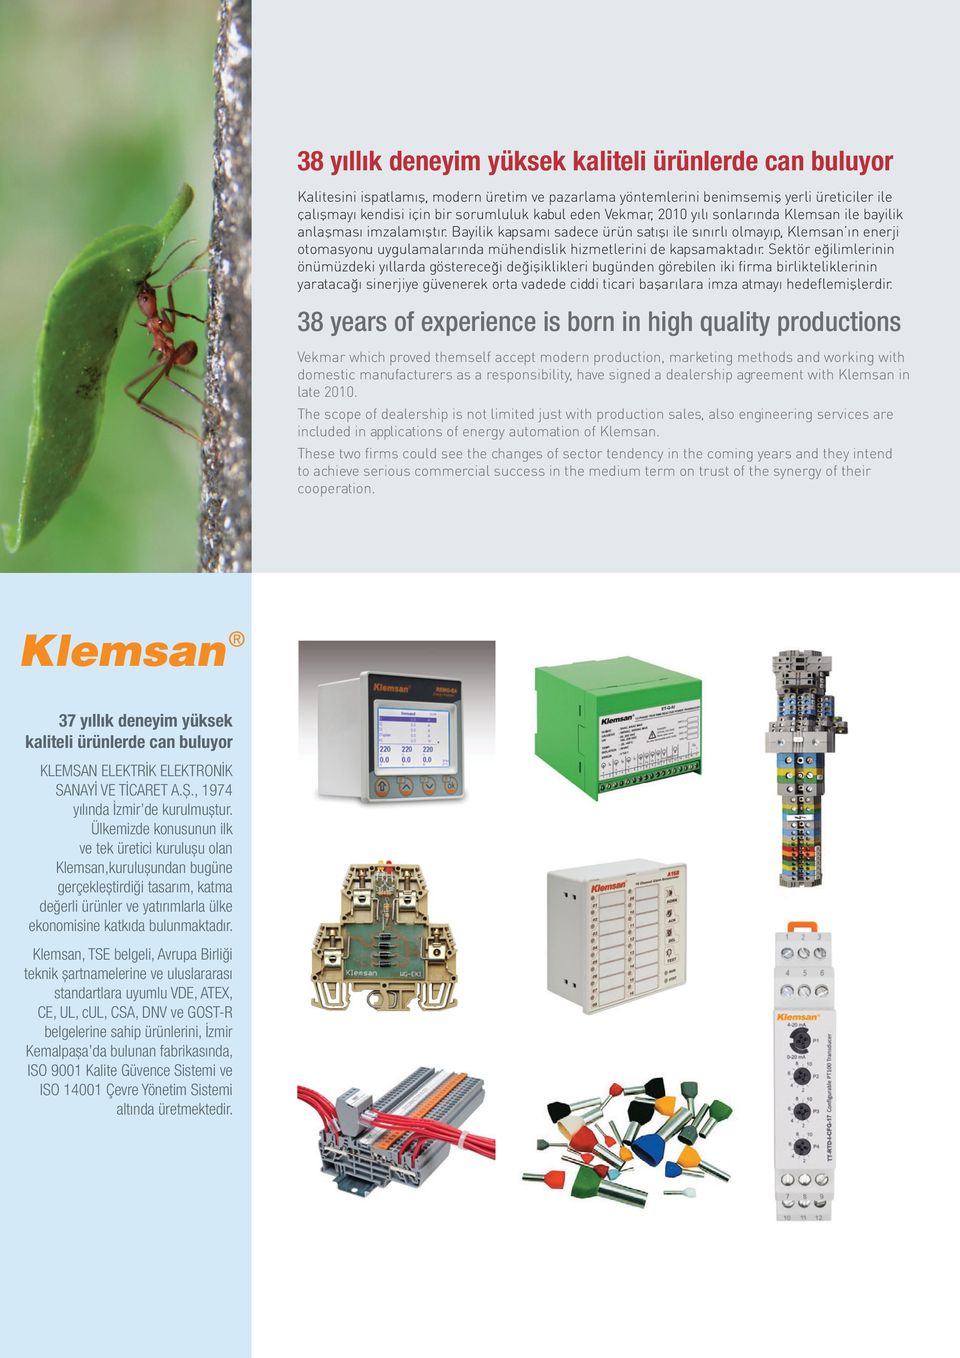 Bayilik kapsamı sadece ürün satışı ile sınırlı olmayıp, Klemsan ın enerji otomasyonu uygulamalarında mühendislik hizmetlerini de kapsamaktadır.